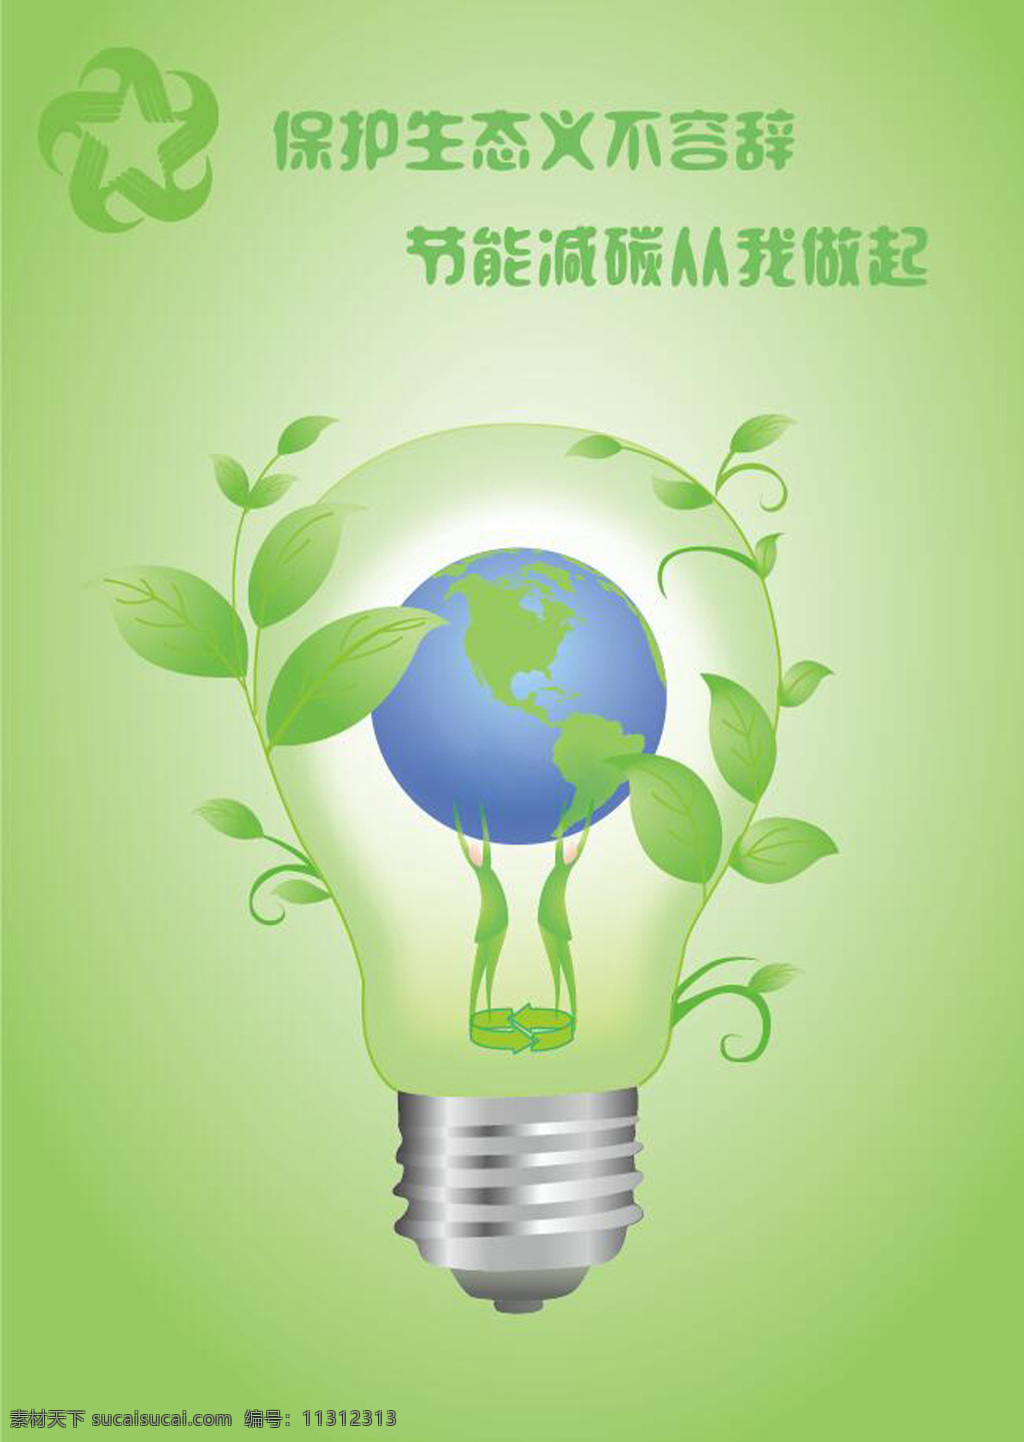 节能 减 碳 环保 招贴 环保招贴 保护地球 电灯 环保海报 绿色 绿叶 树叶 保护生态